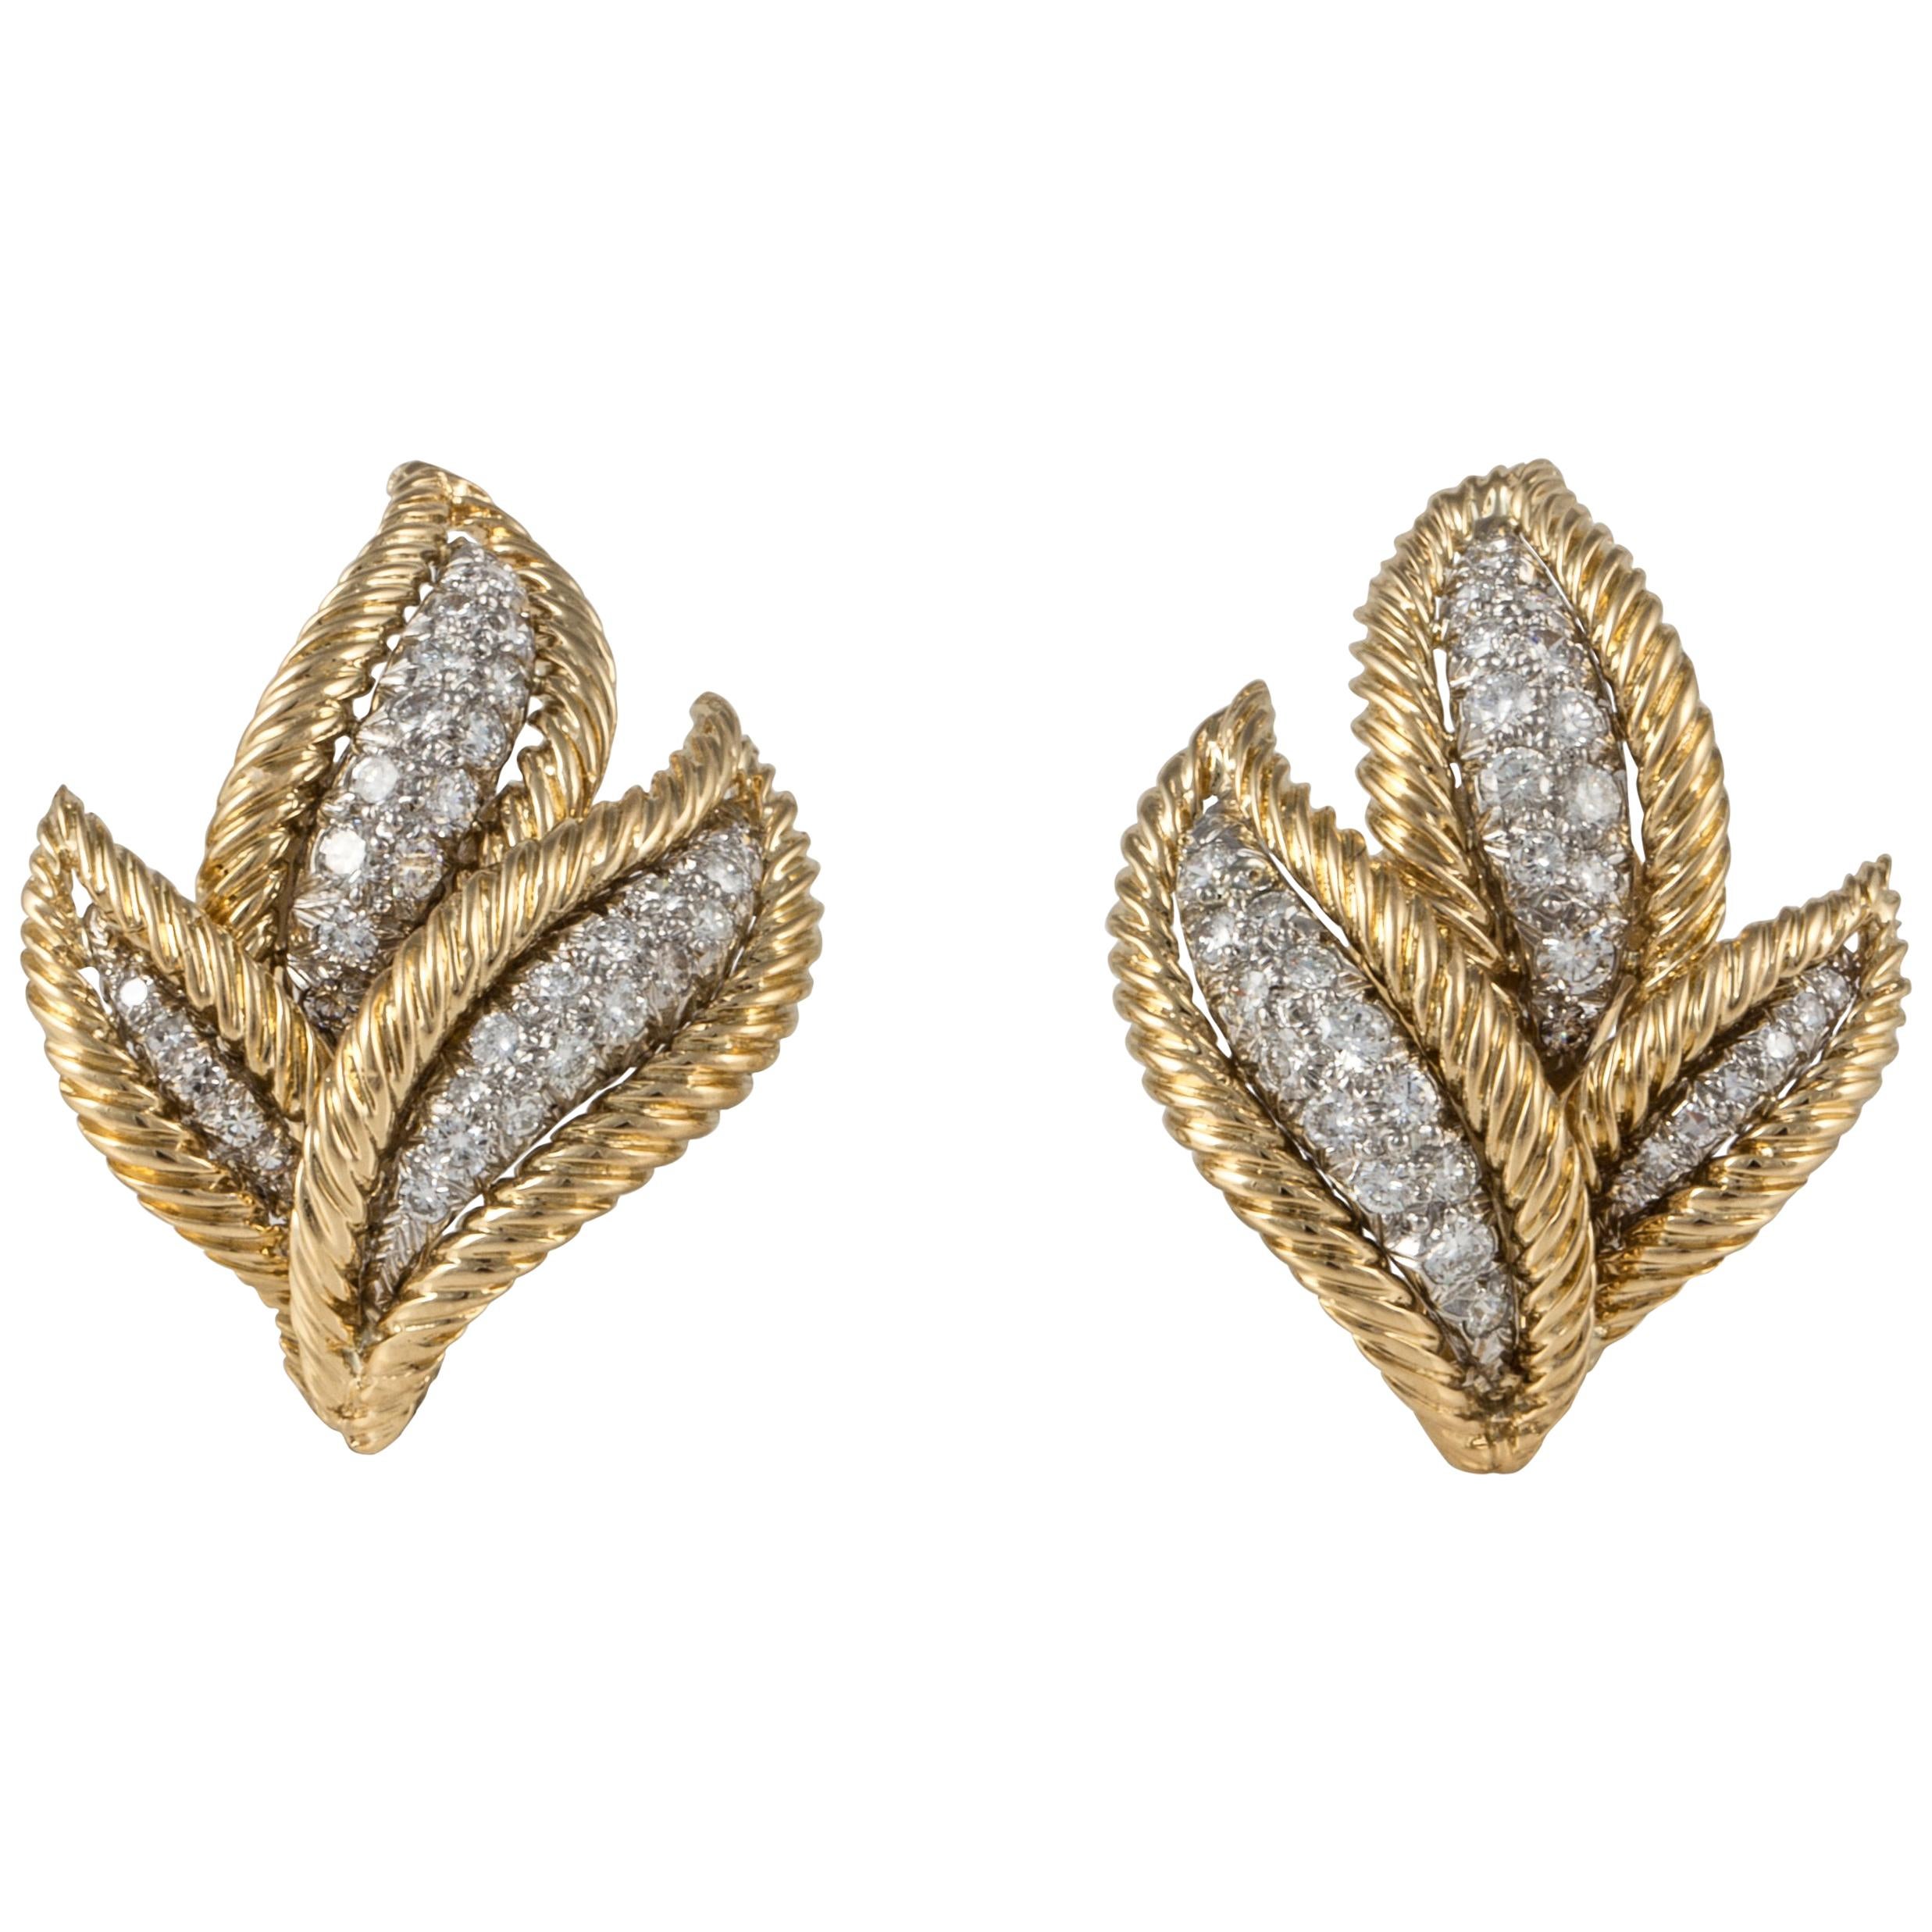 David Webb Diamond Earrings in 18K Gold